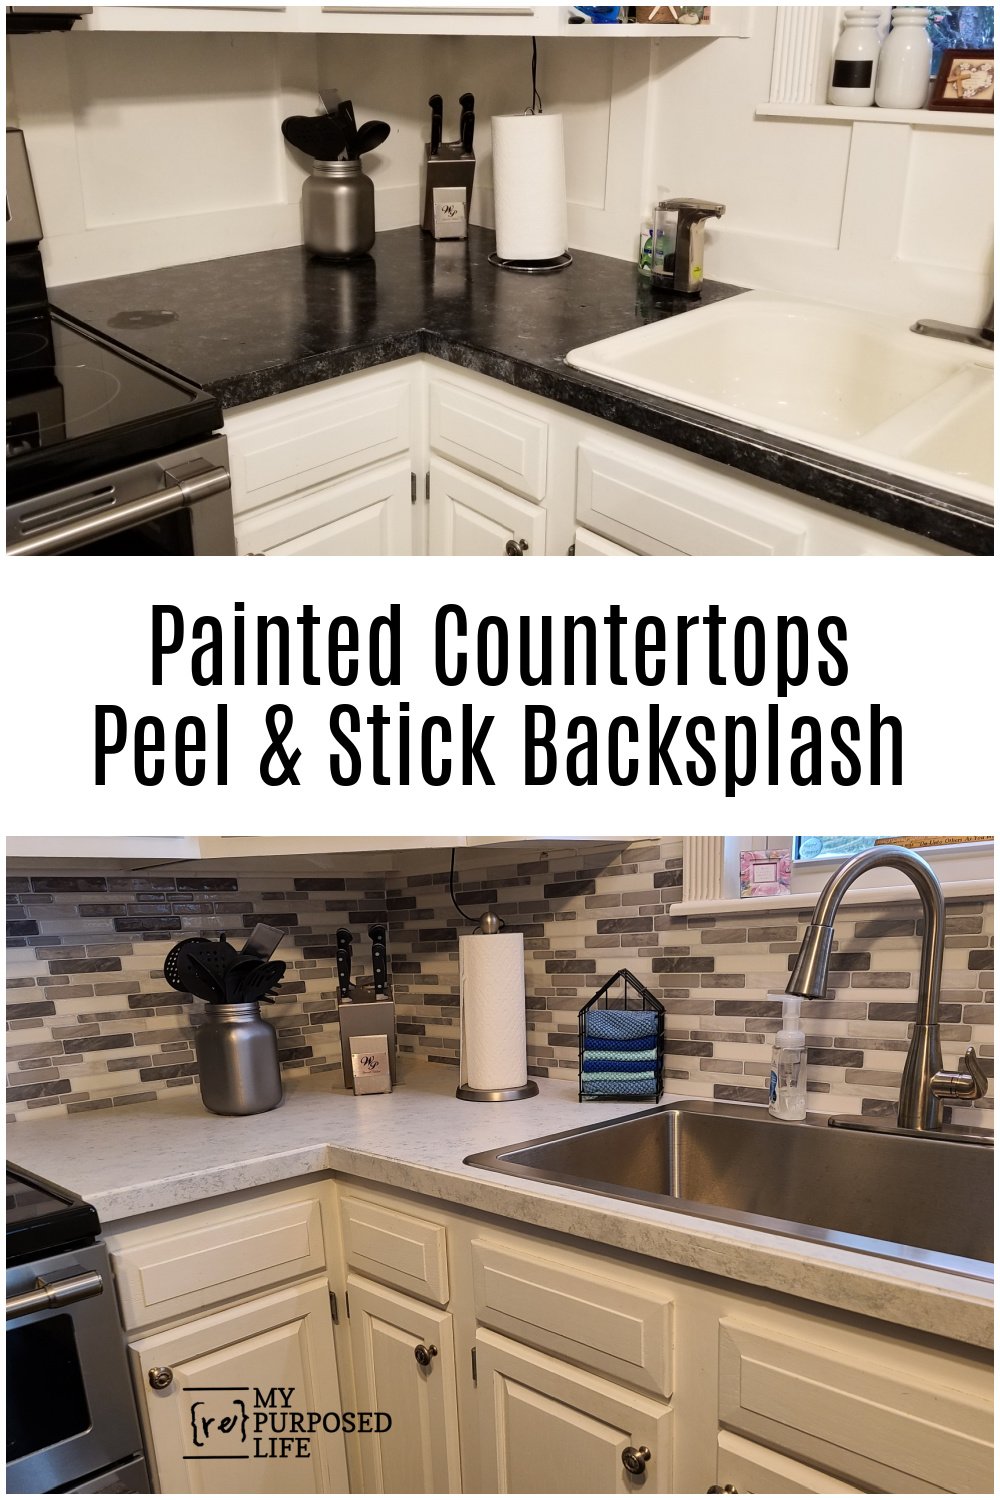 painted countertops peel and stick backsplash via @repurposedlife